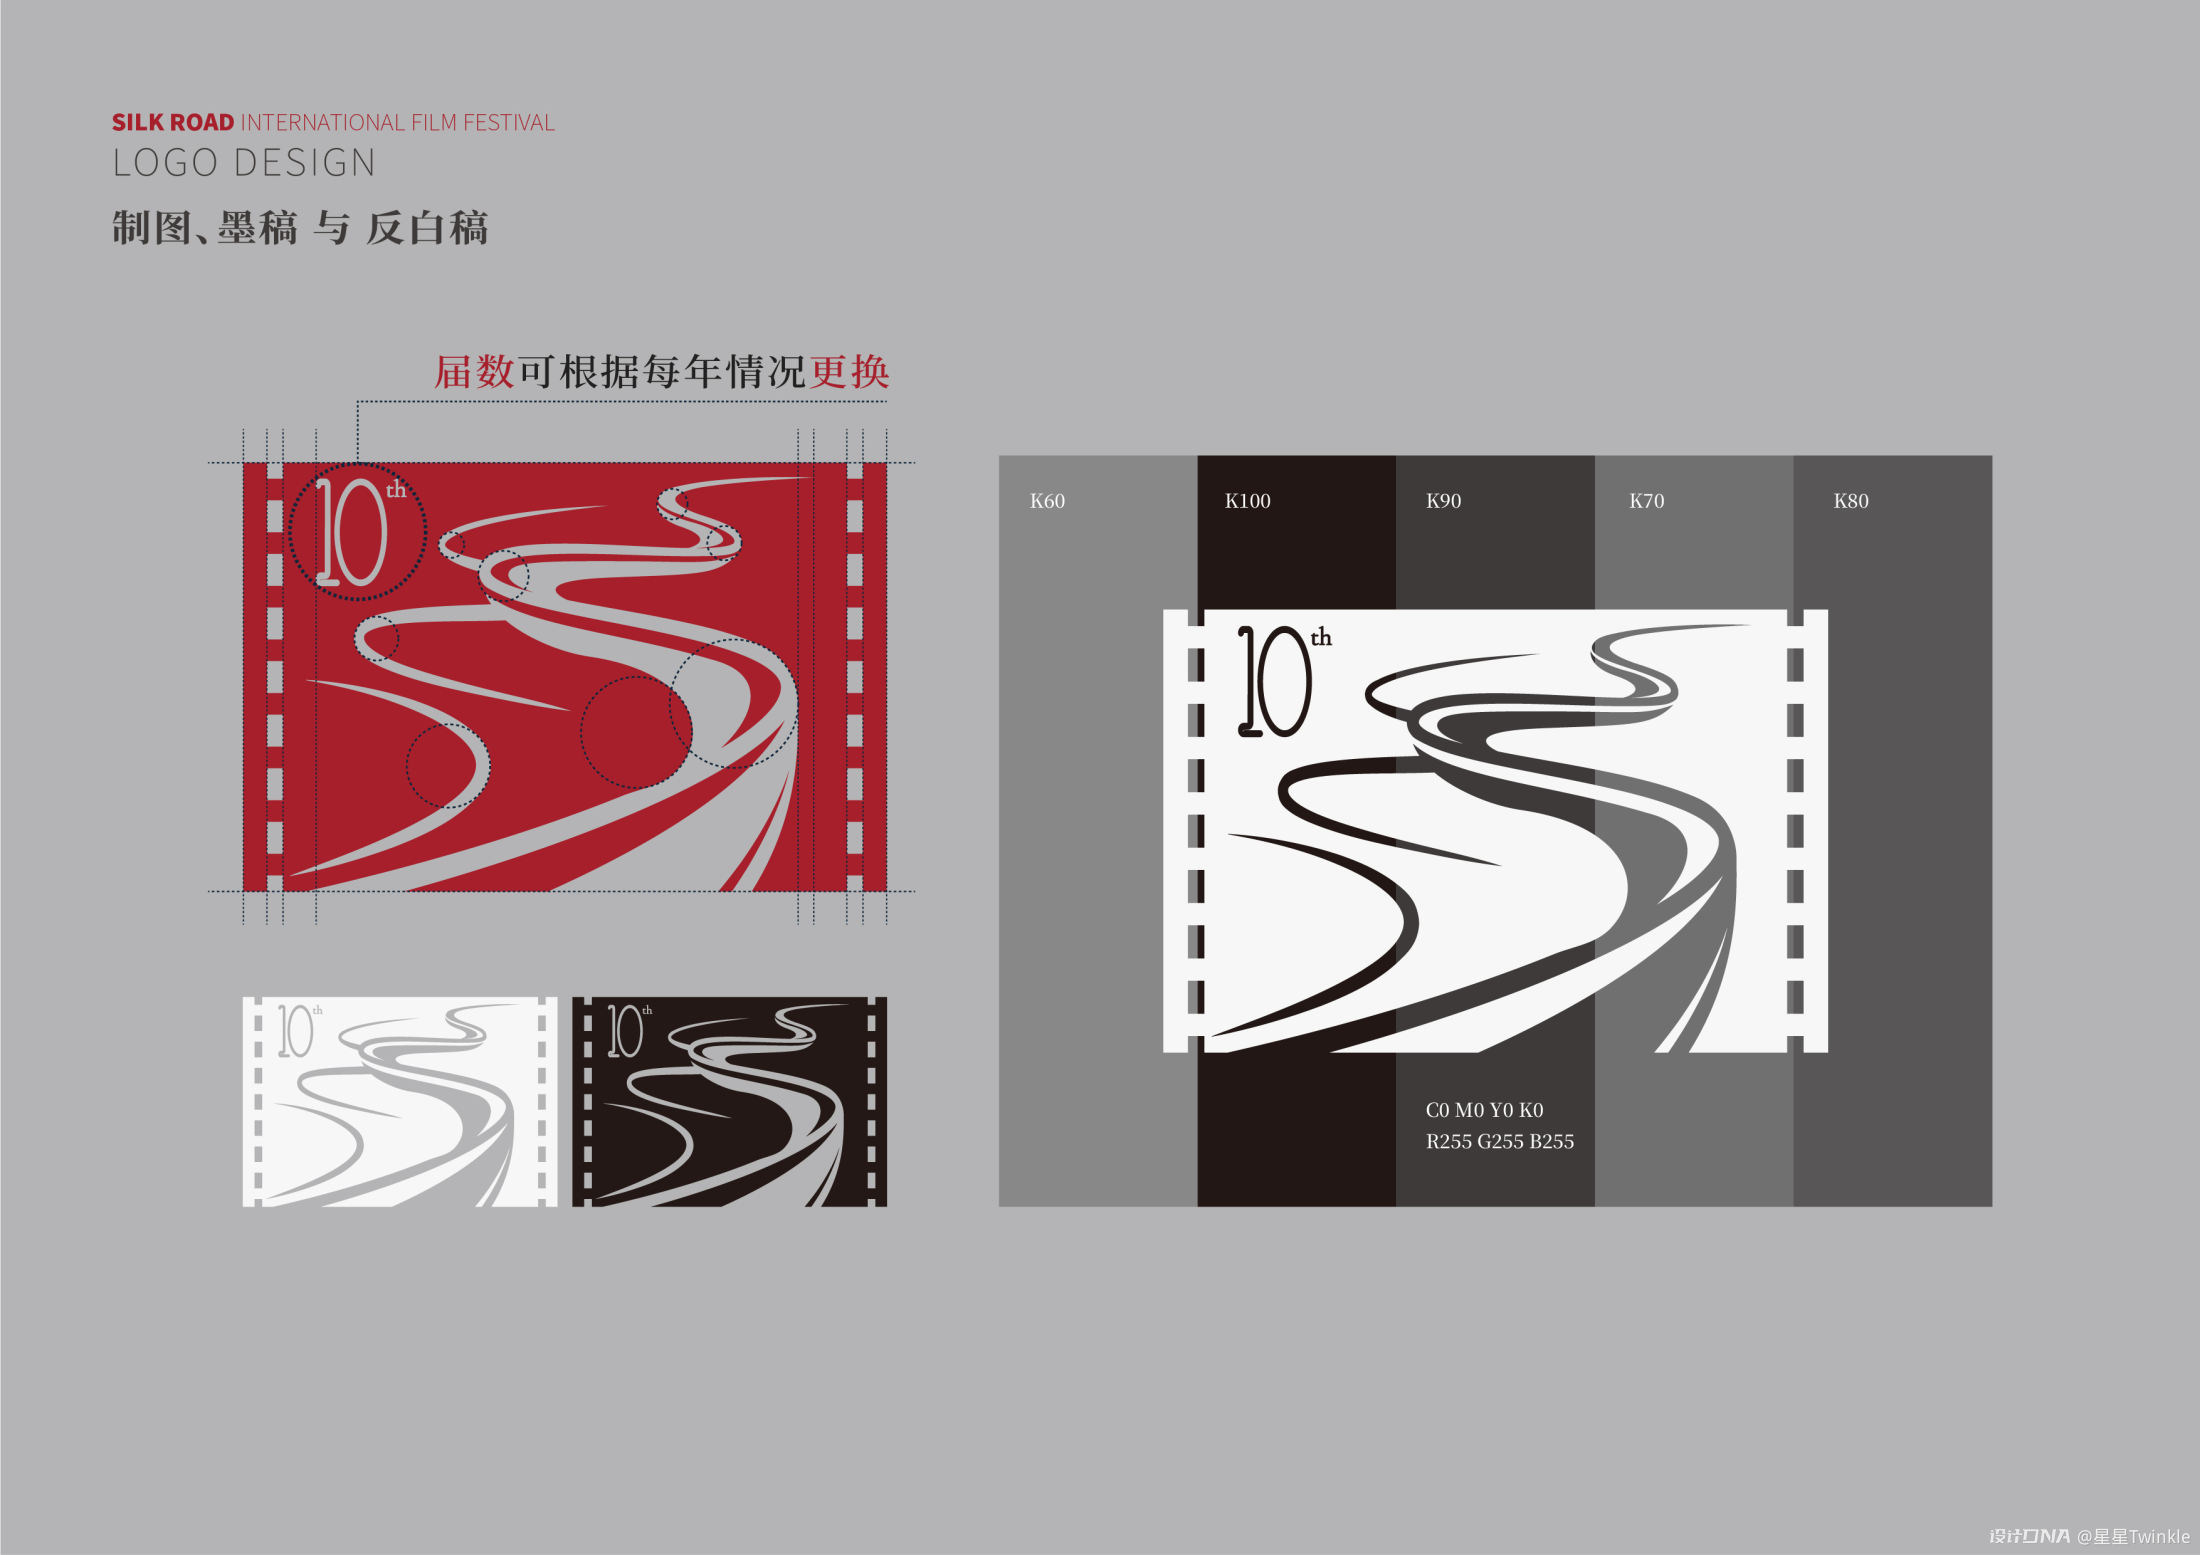 【丝绸之路】—logo及会旗设计方案 图4